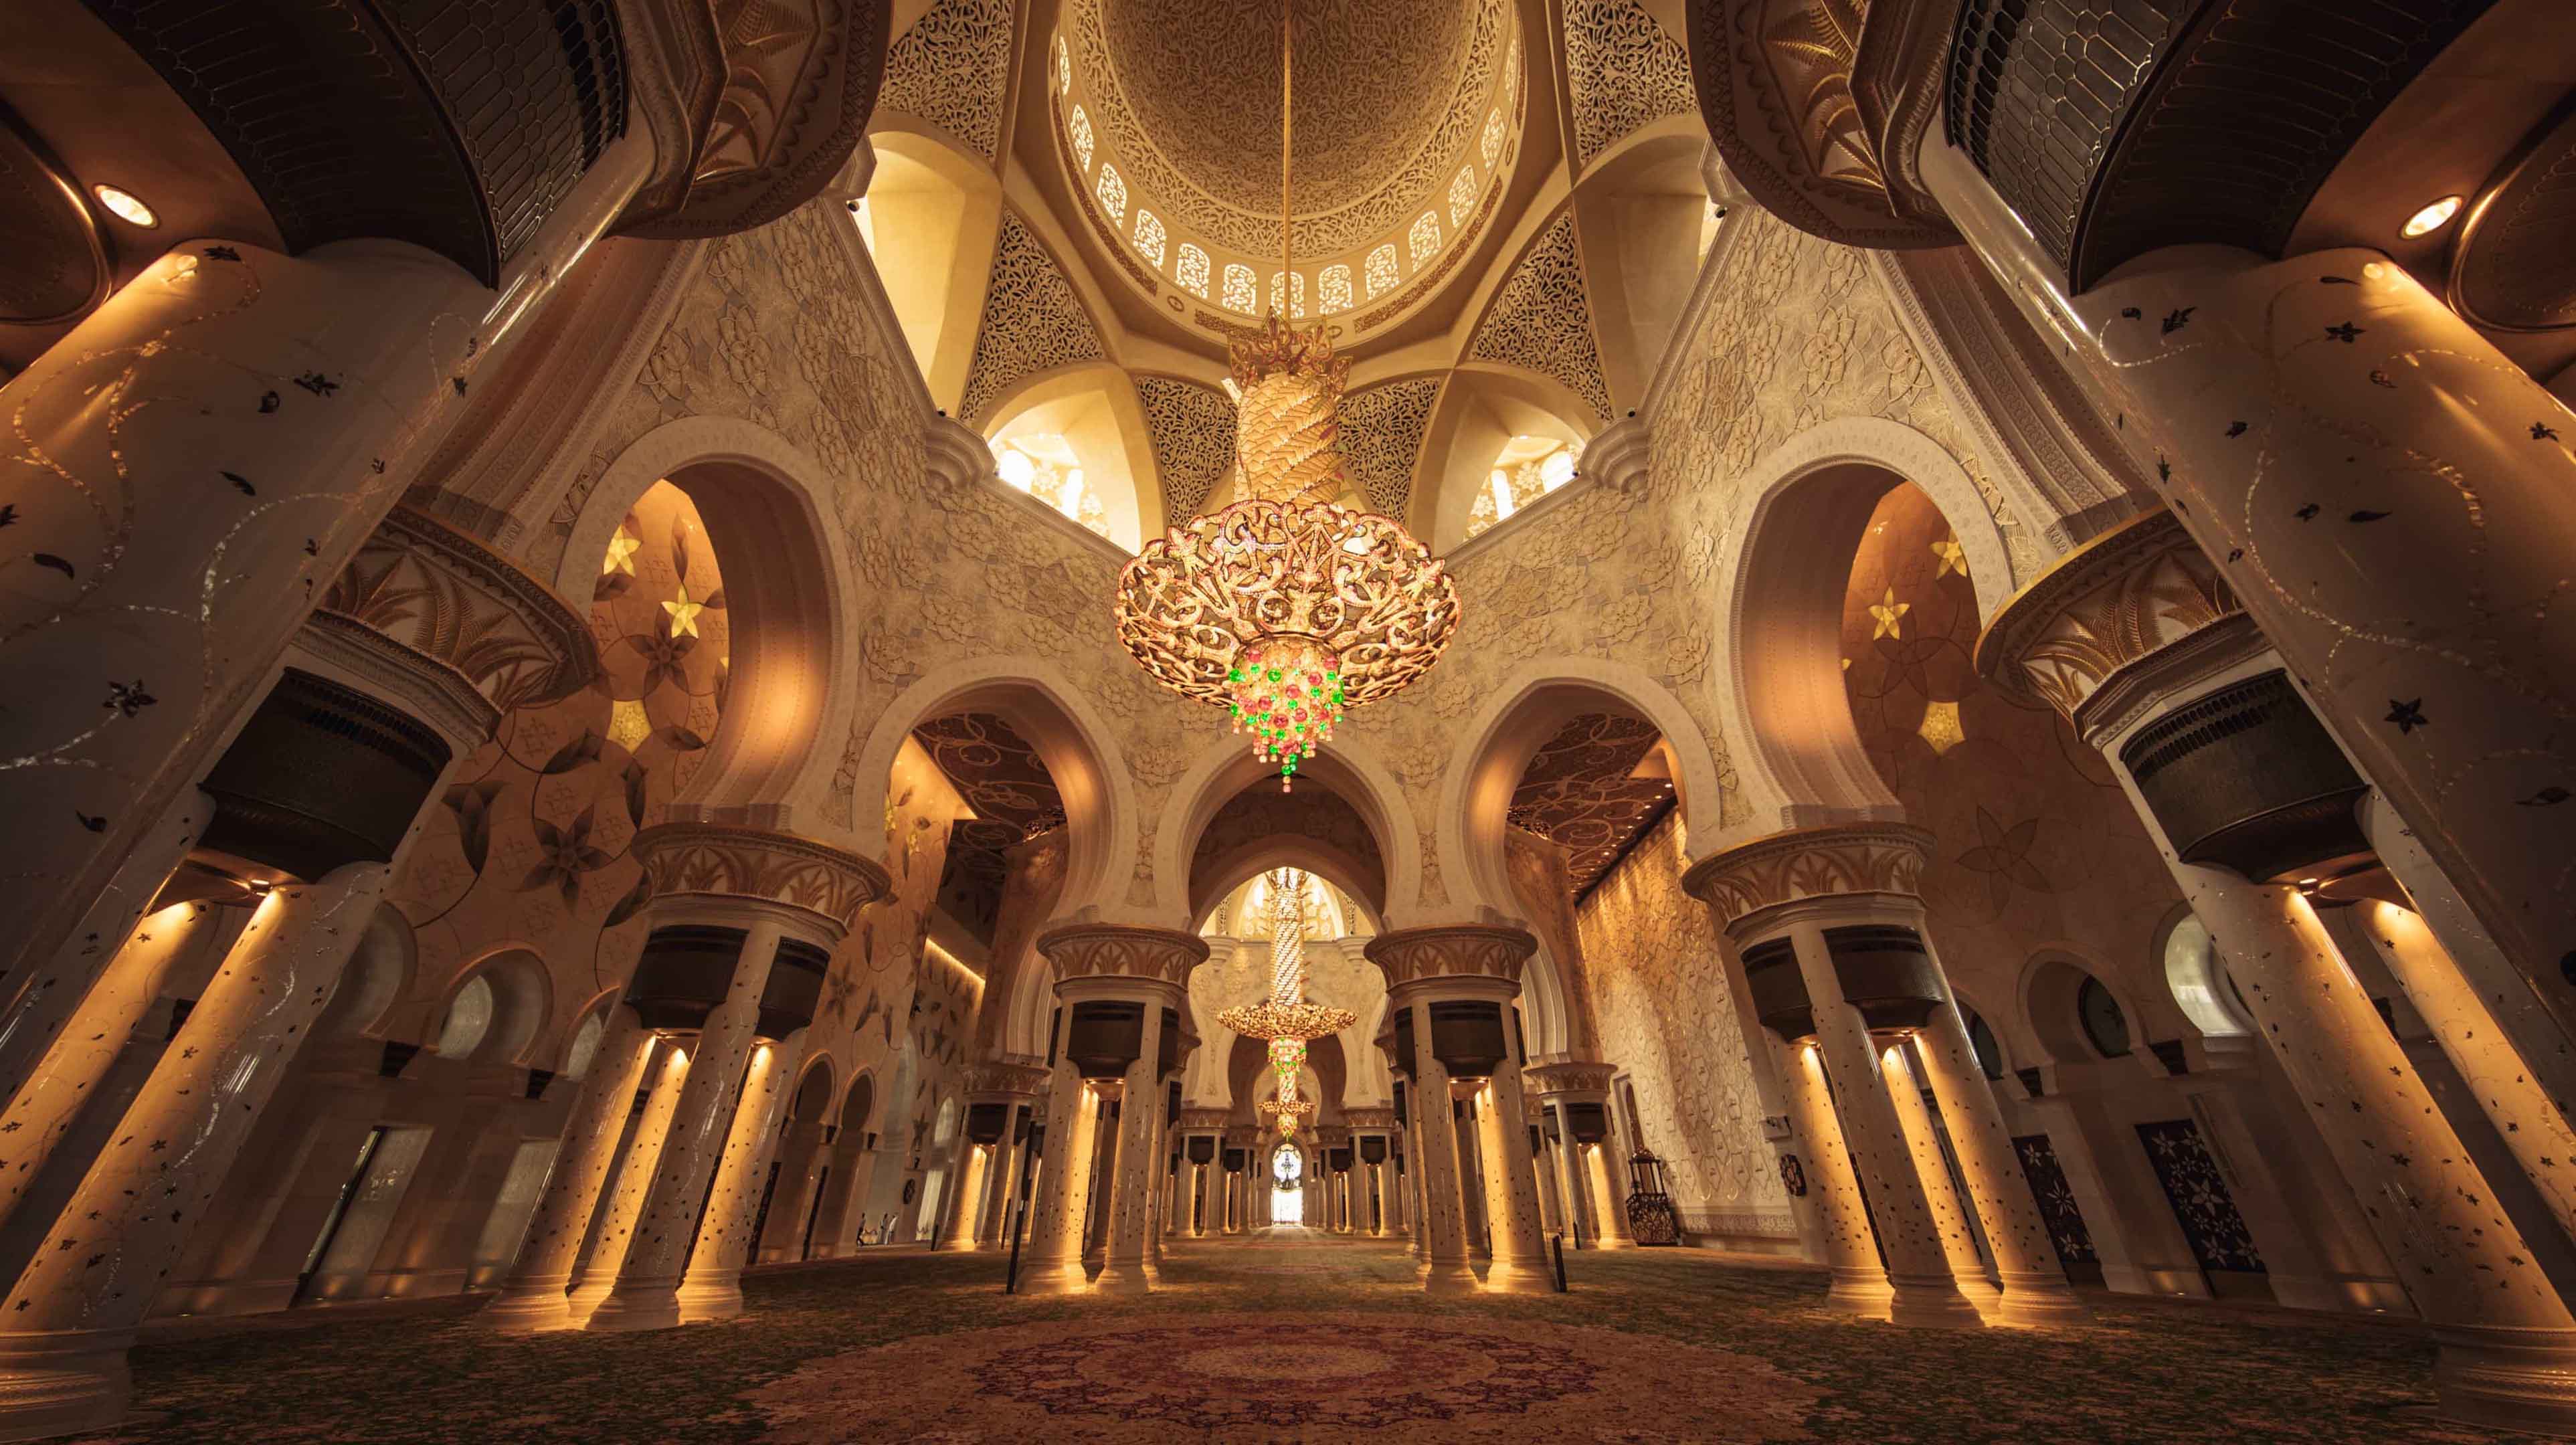 המסגד הגדול שייך זאייד (Sheikh Zayed Grand Mosque)